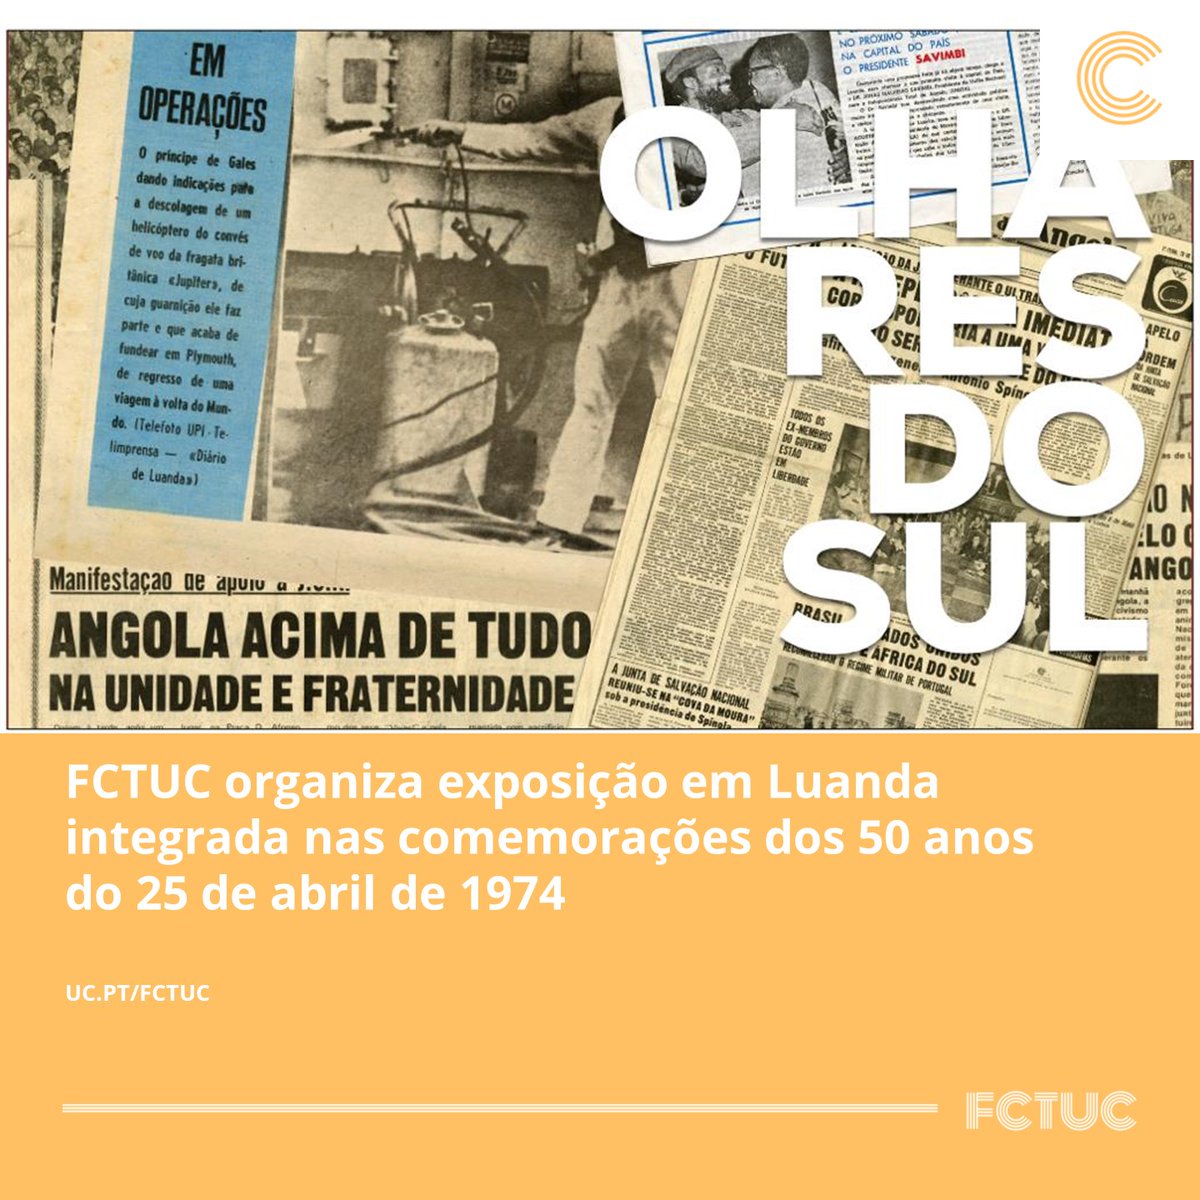 FCTUC organiza exposição em Luanda integrada nas comemorações dos 50 anos do 25 de abril de 1974. Leia toda a informação em: uc.pt/fctuc/noticias…